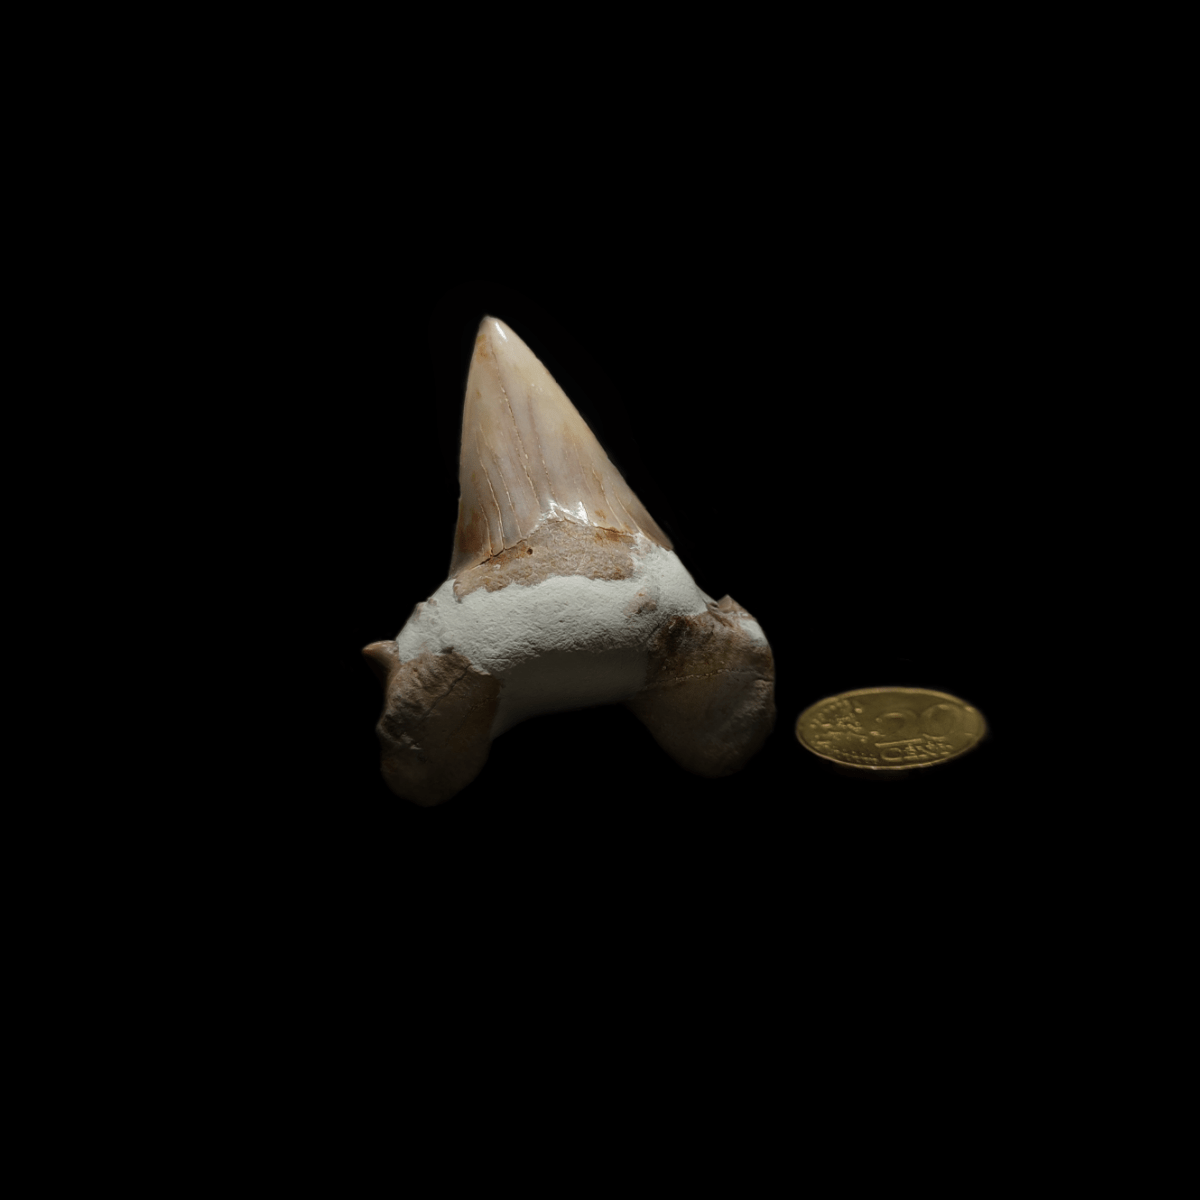 Fossiler Haizahn neben 20 Cent Münze zum Größenvergleich auf schwarzem Hintergrund